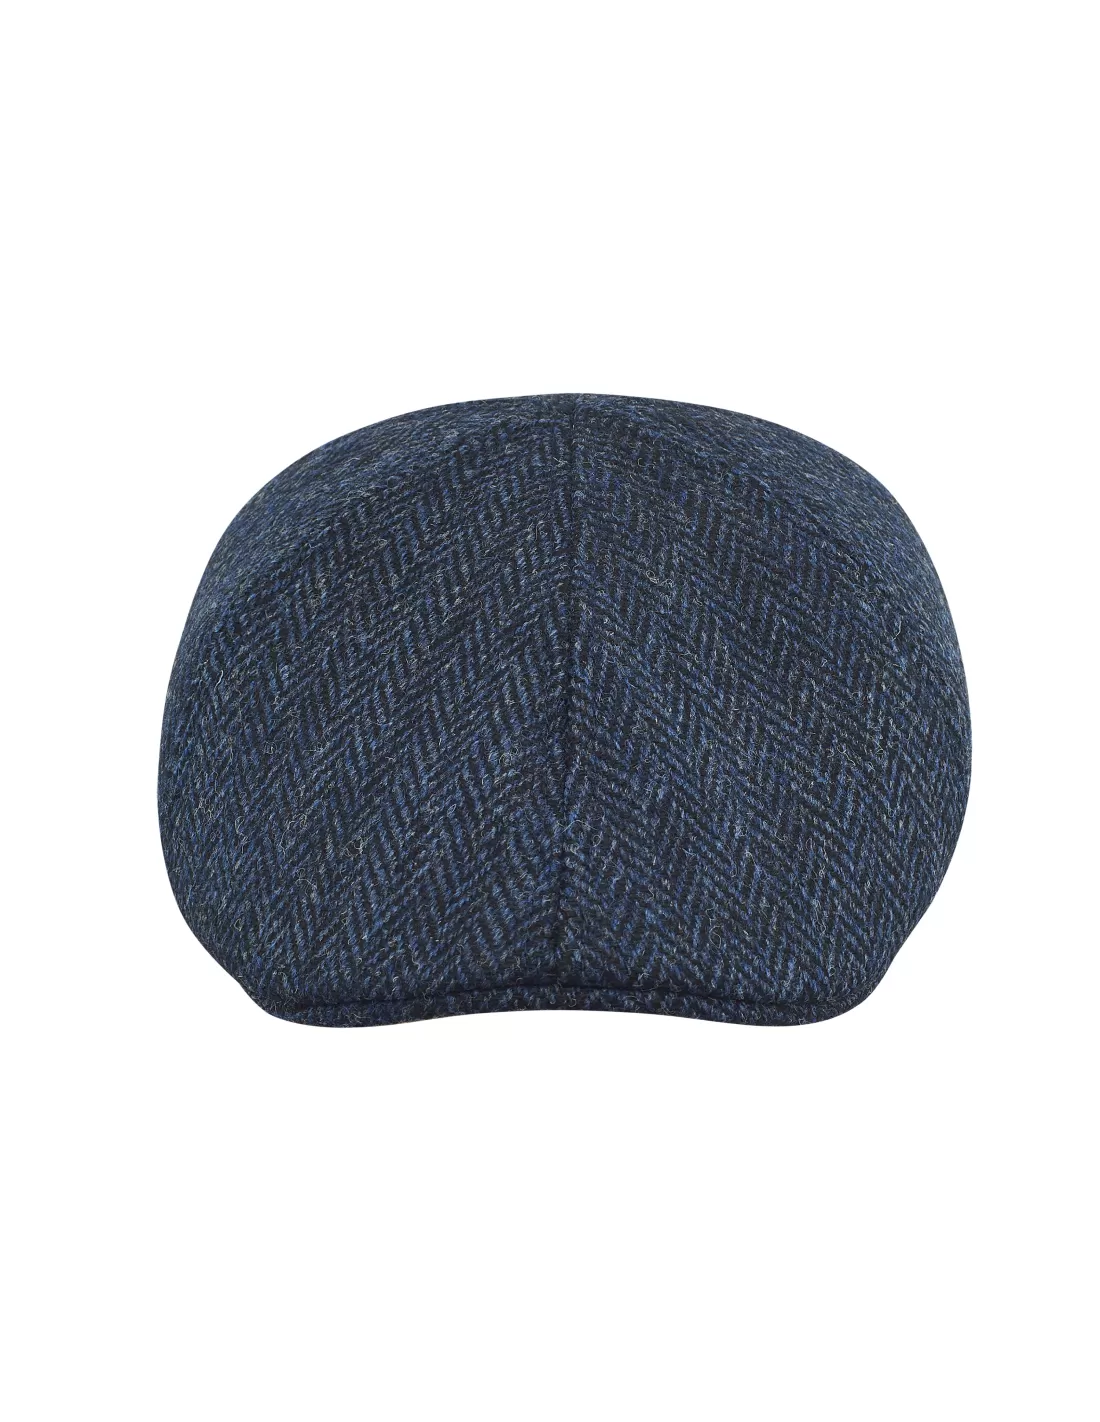 Rusty - duckbil cap made of genuine Harris Tweed (100% wool) Size